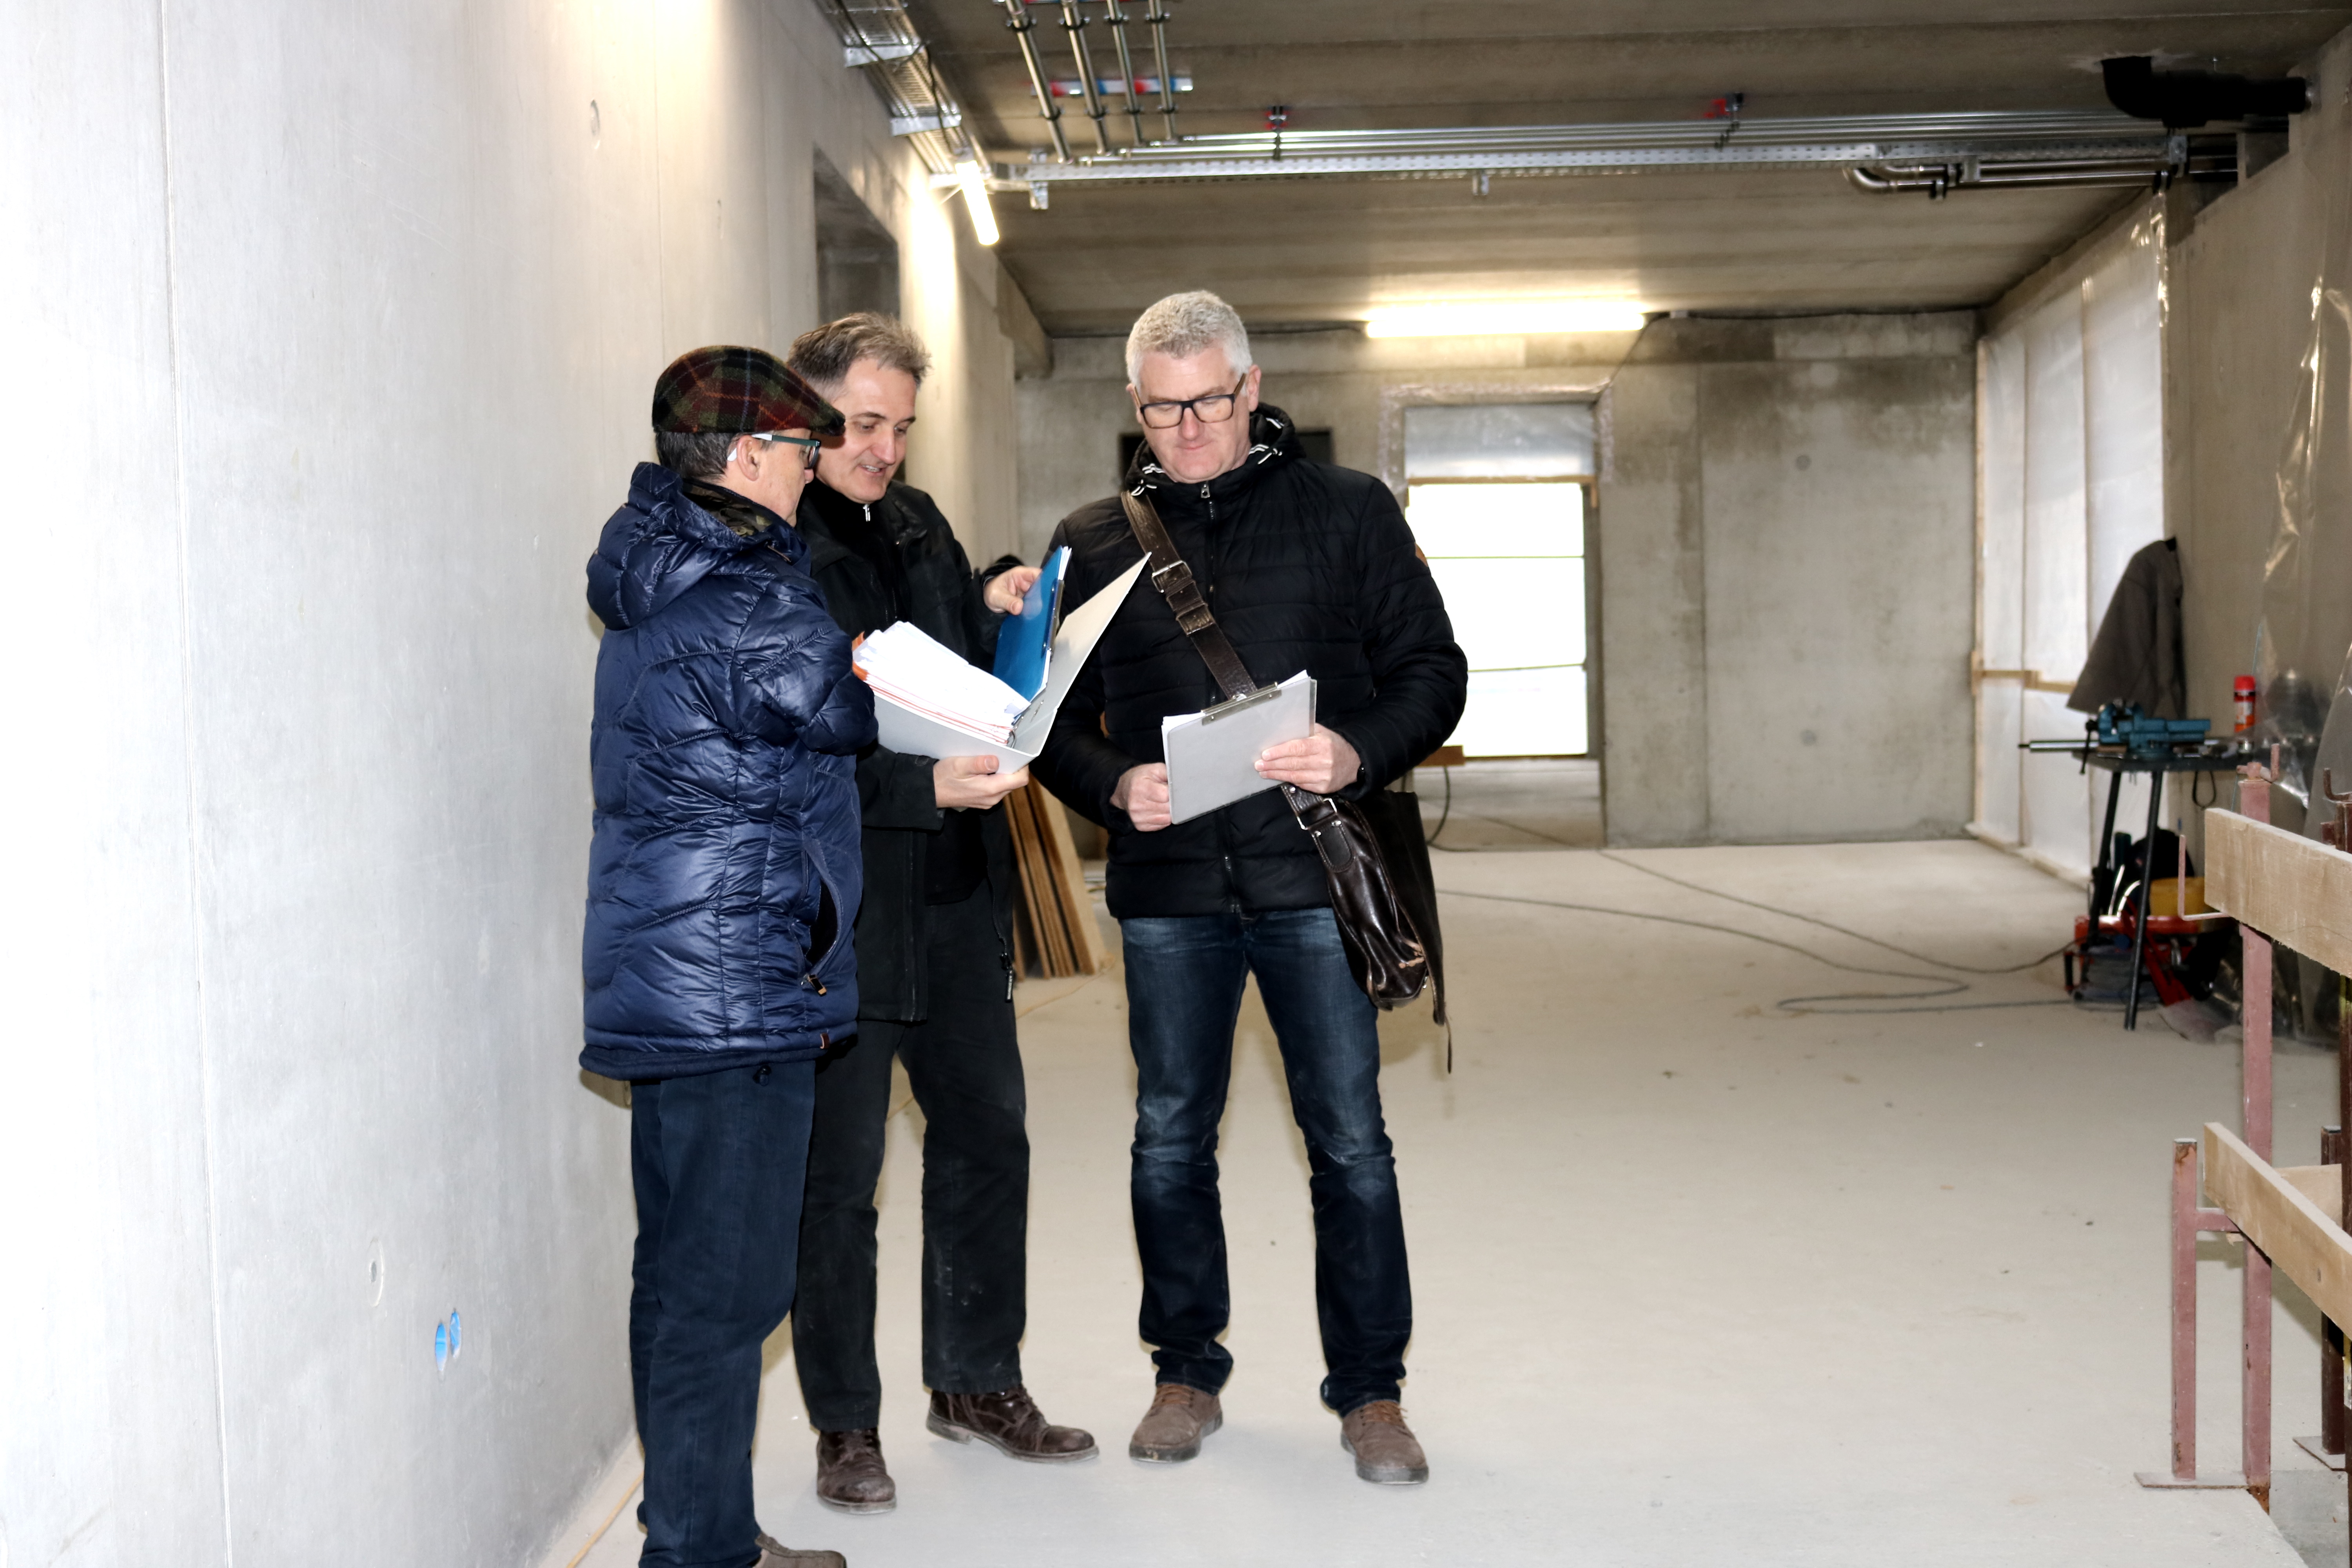  Funktionelle Räume auf jedem Stockwerk machen das Gebäude vielseitig nutzbar. Frank Lautenschläger (Mitte) und Jörg Kreuzinger im Gespräch mit dem Architekten. 